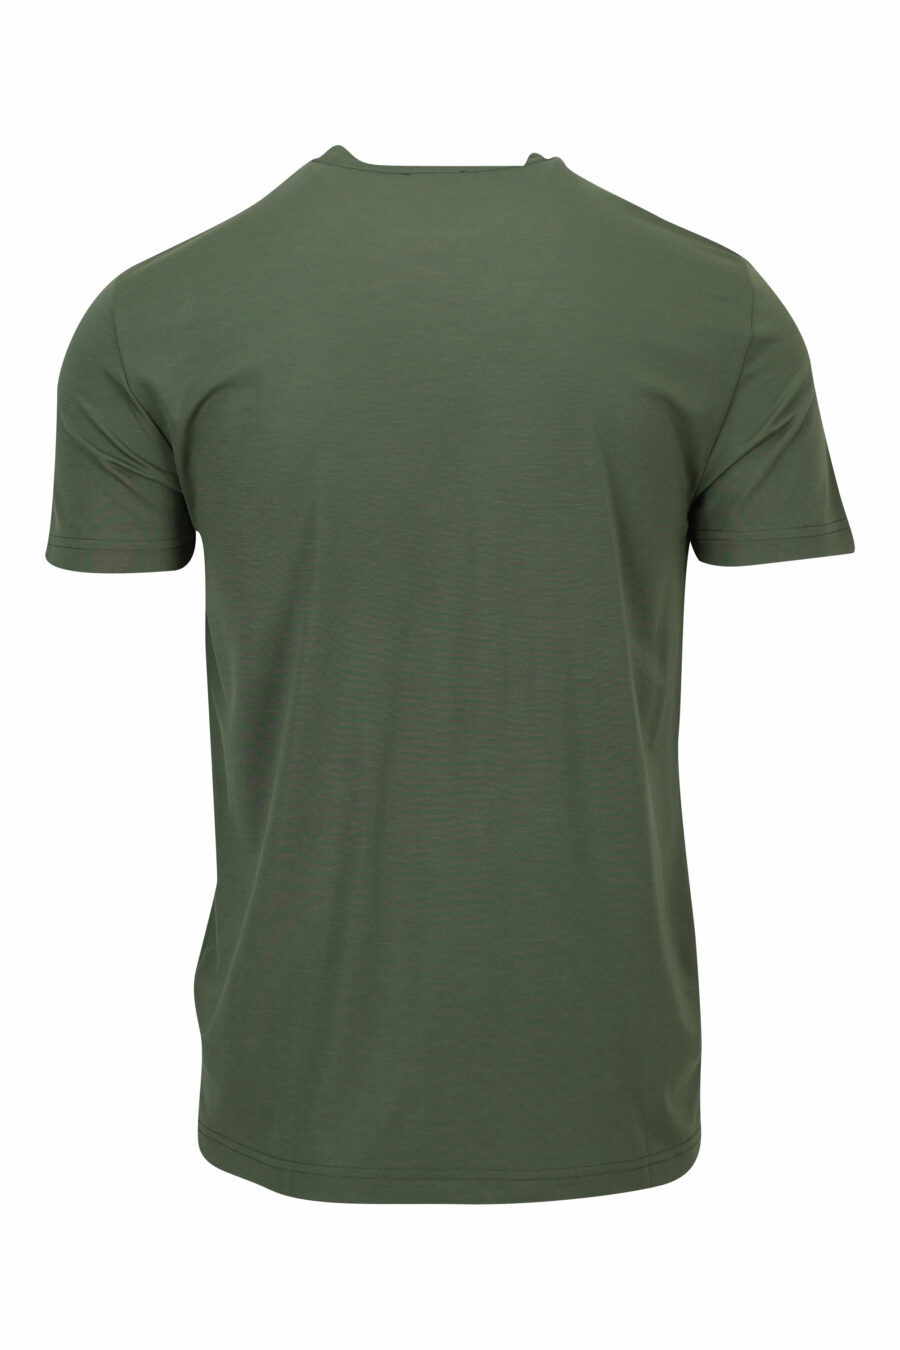 Camiseta verde "oversize" con minilogo "lux identity" escudo - 8057970700005 1